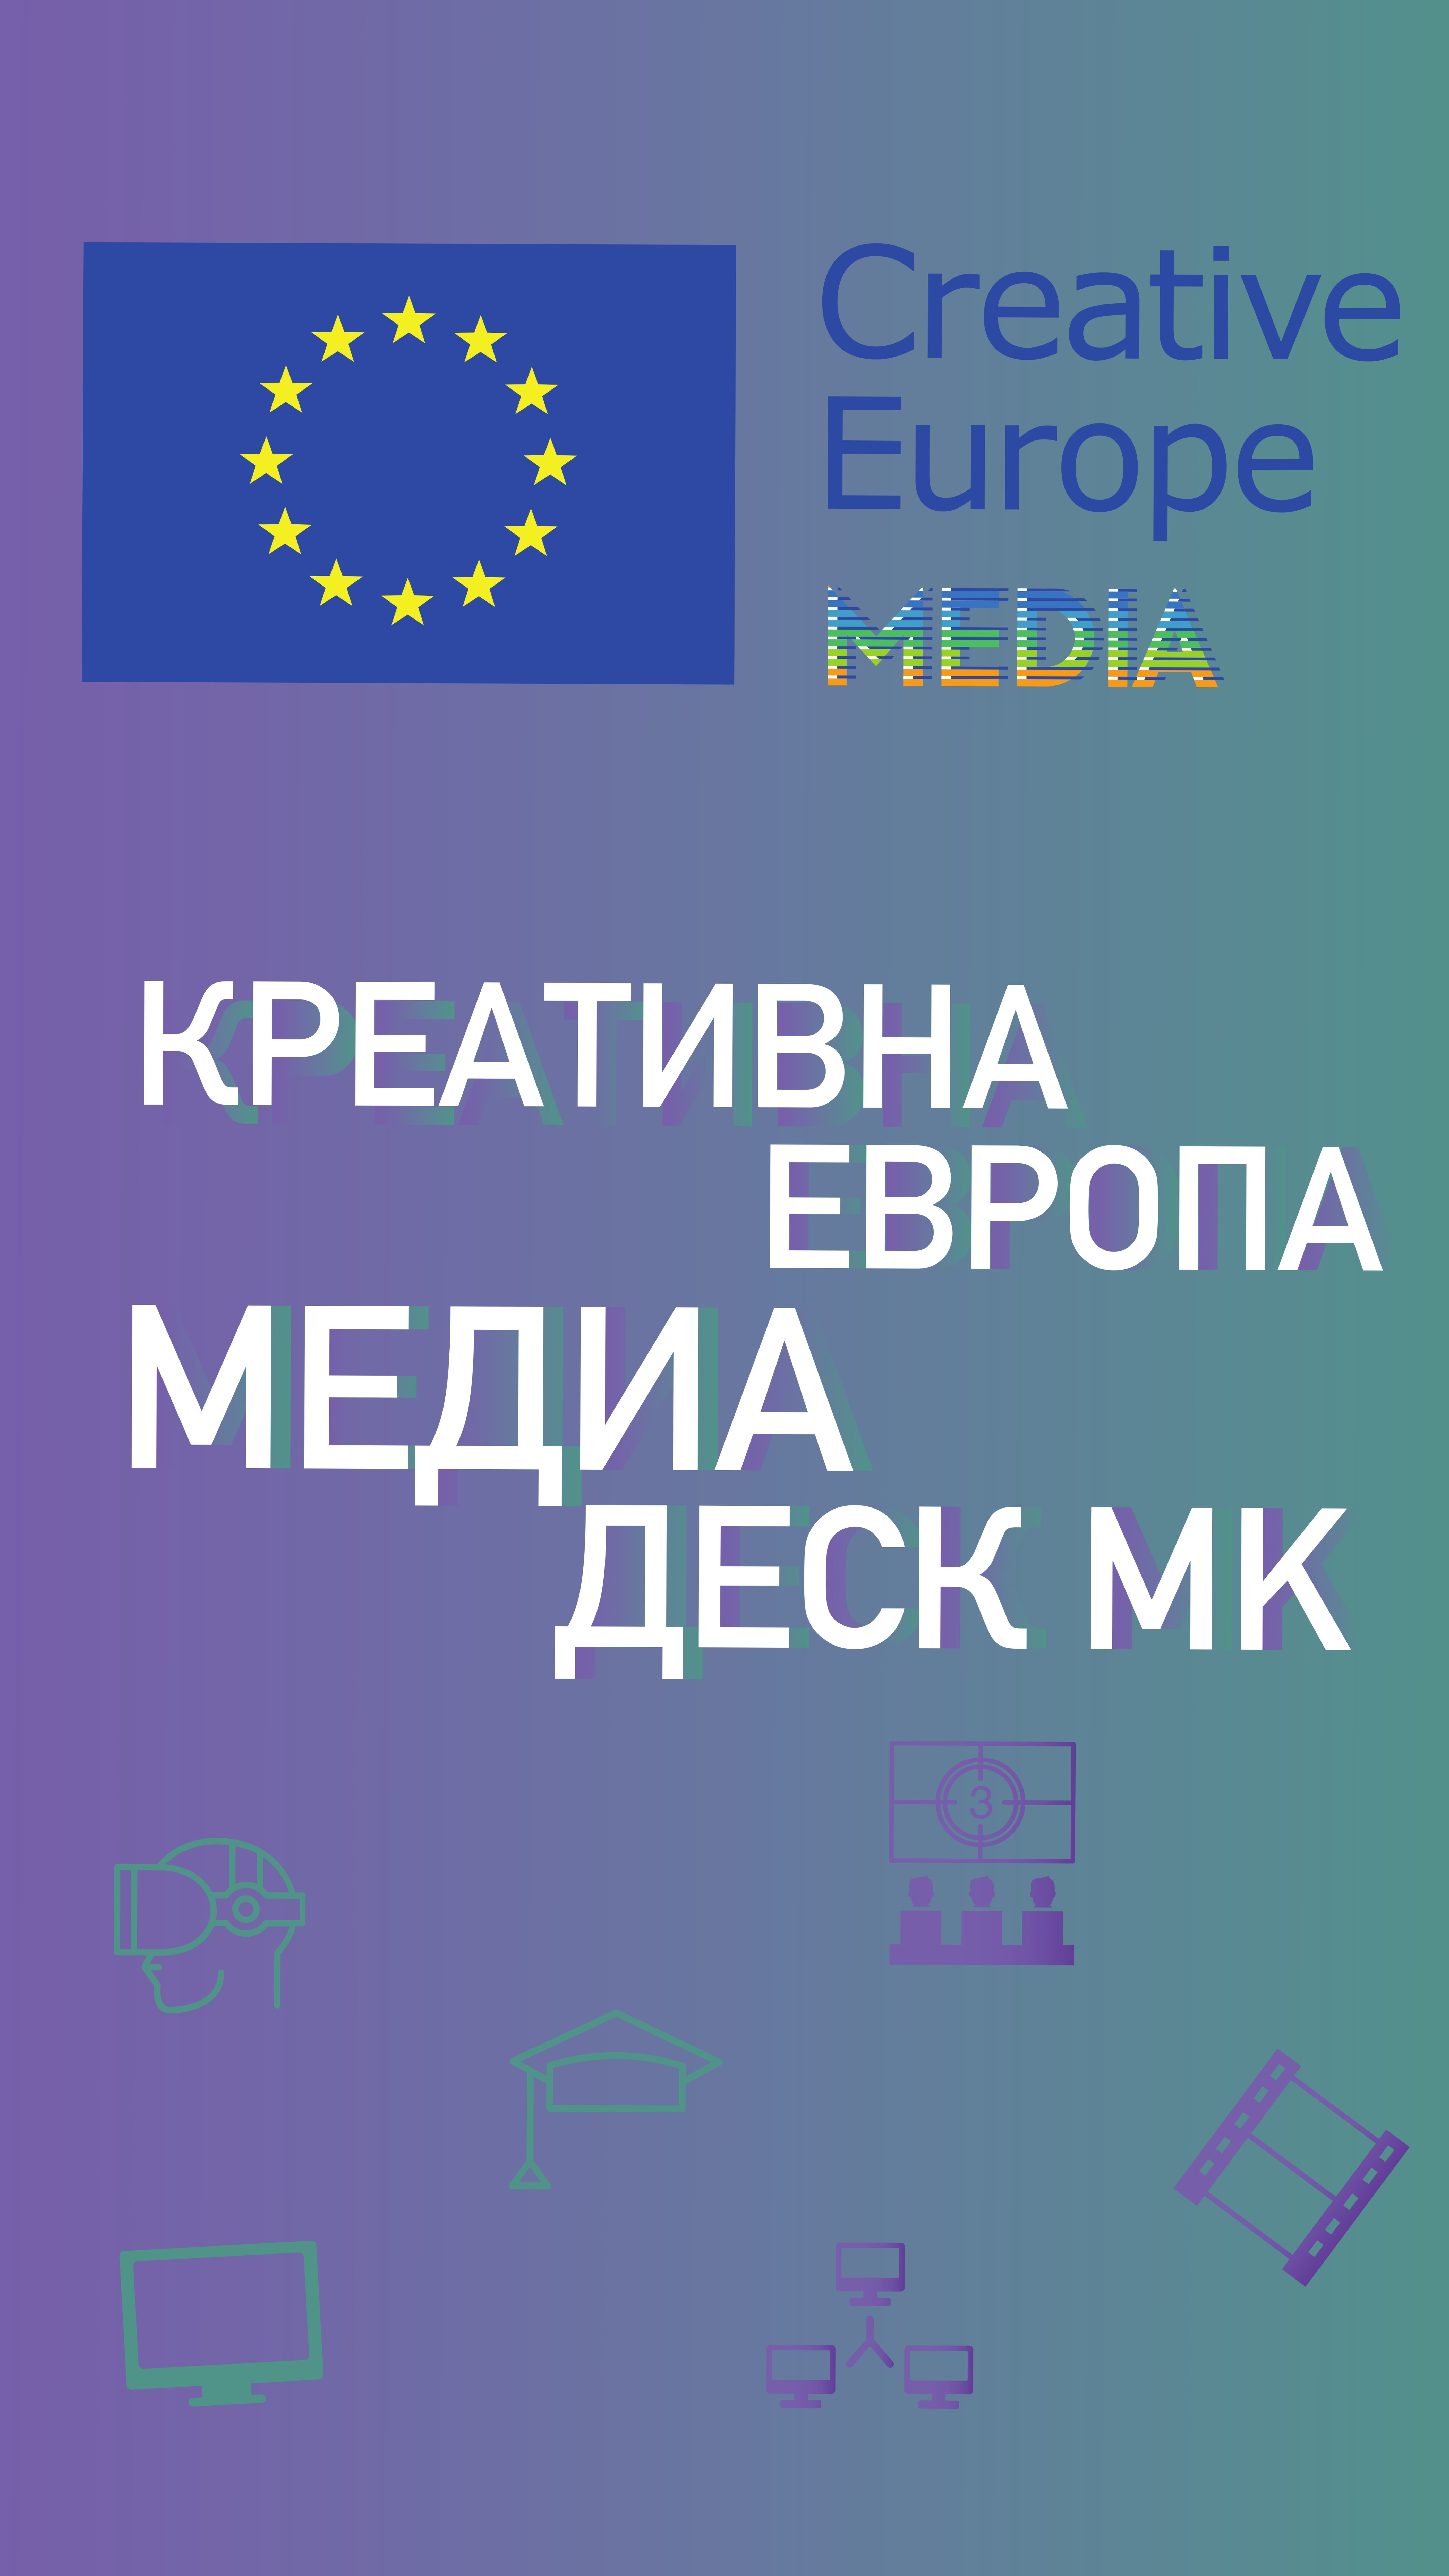 MK europe online